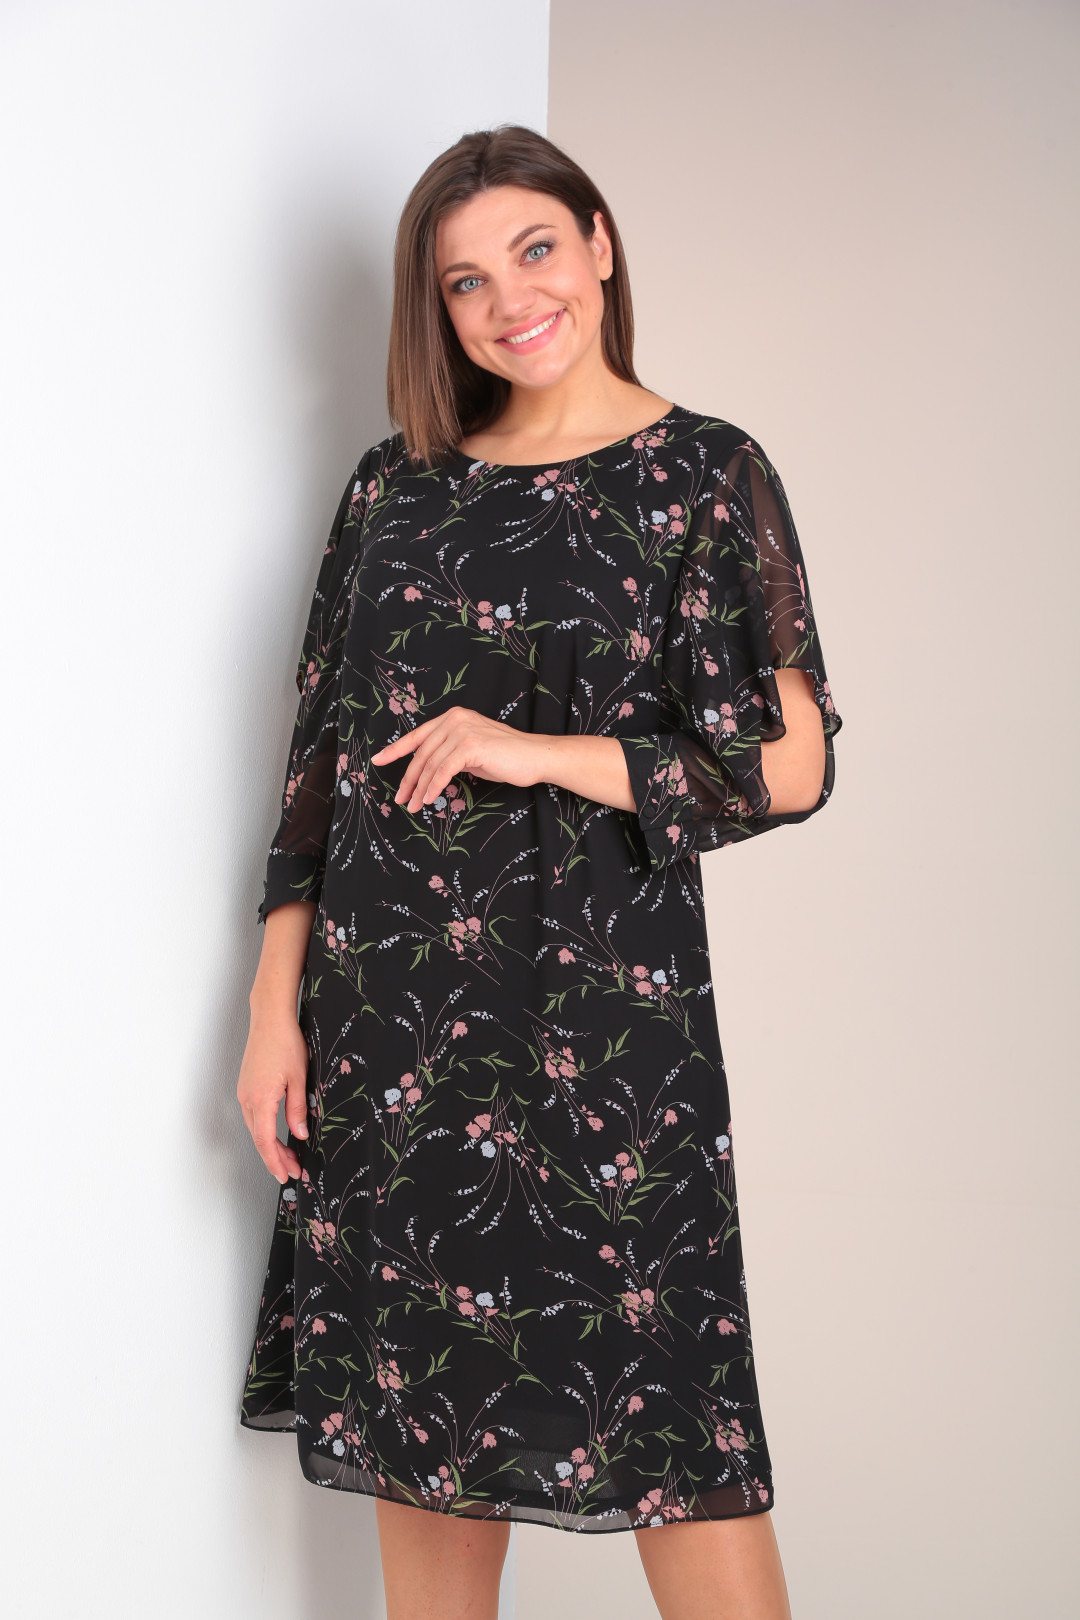 Платье Карина Делюкс В-398-1 черный